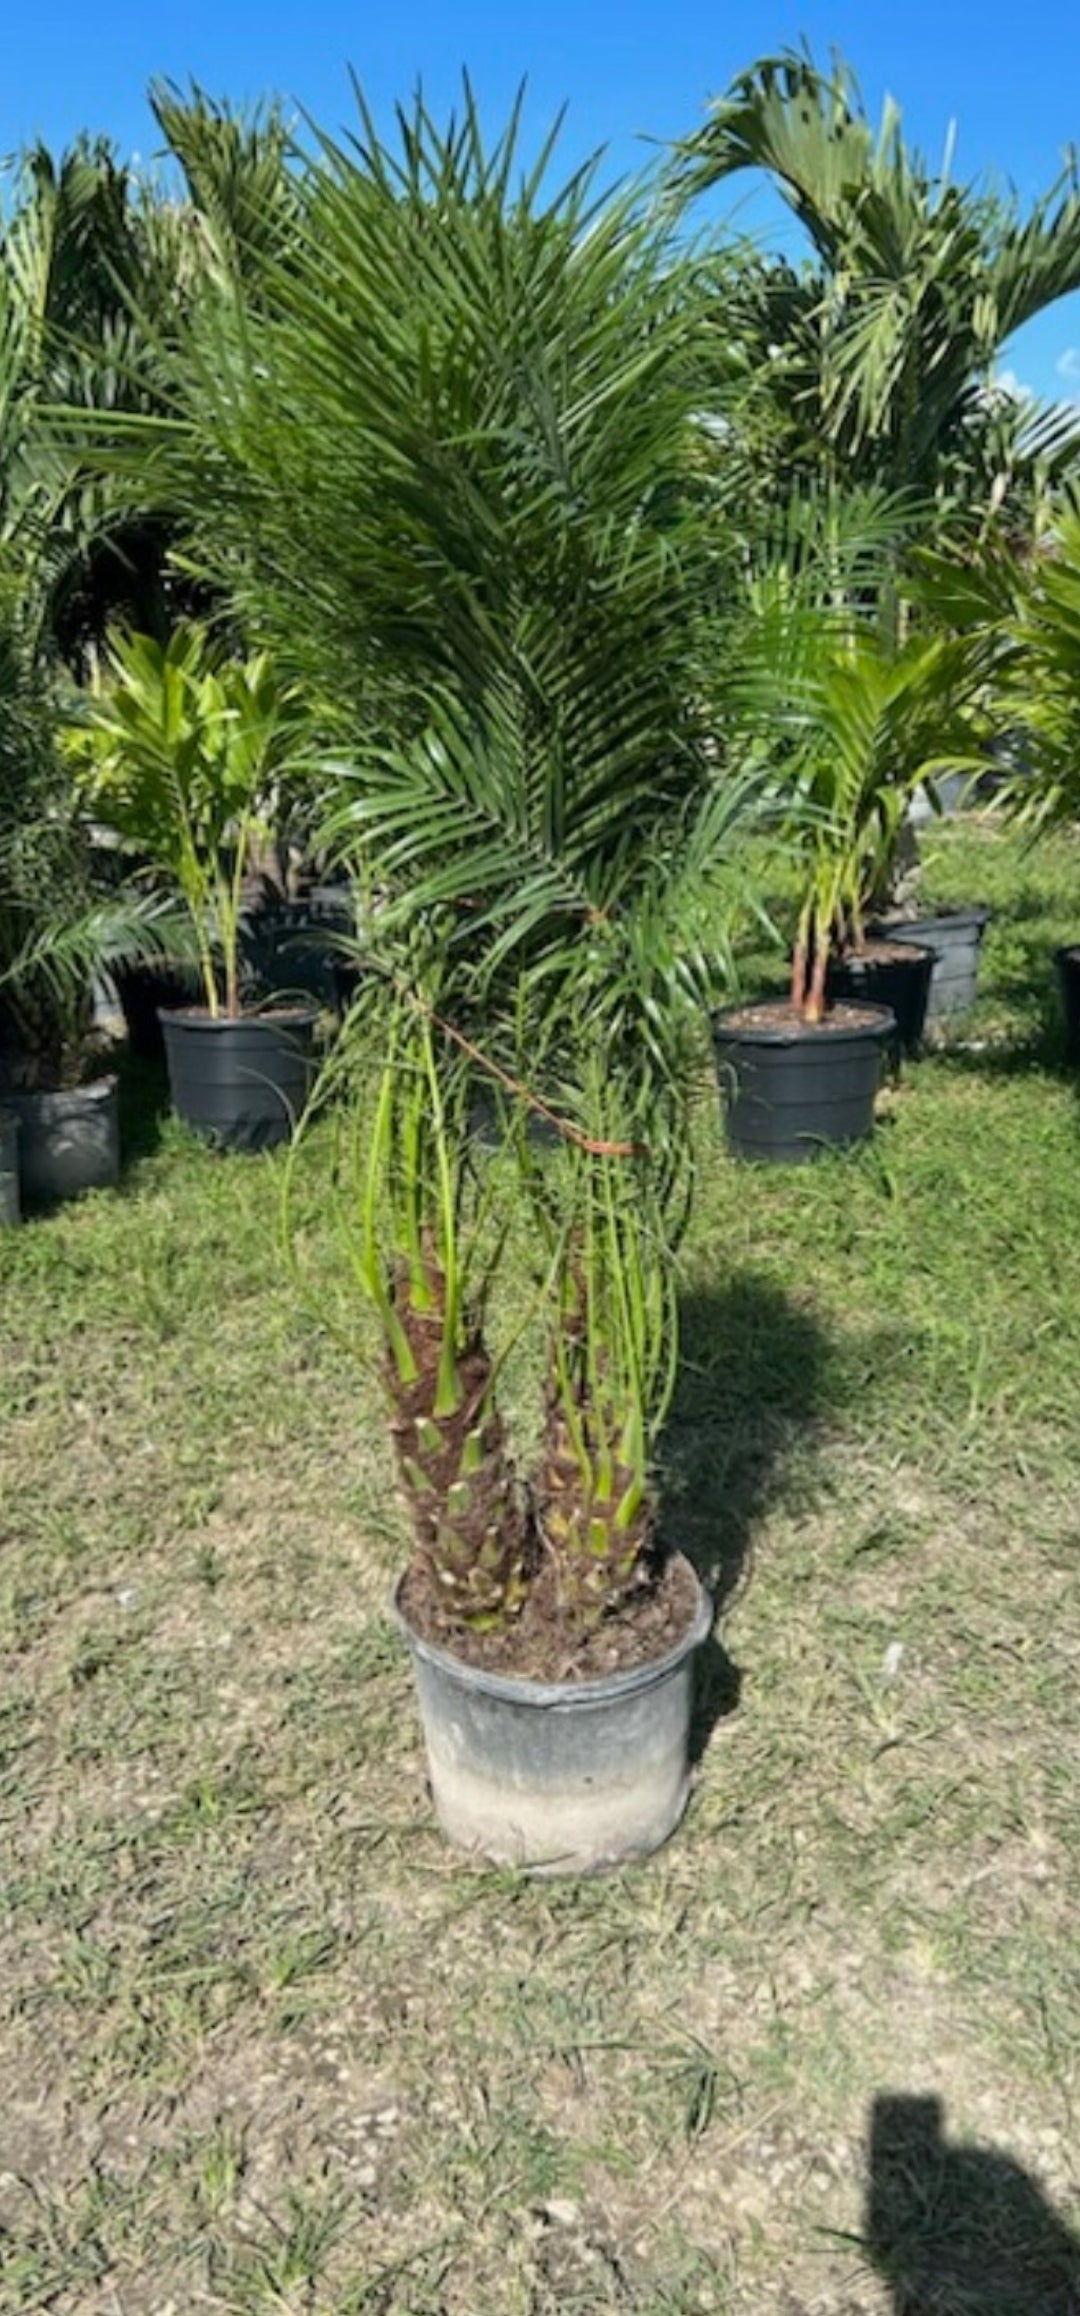 Robellini Palm (Dwarf Date Palm)